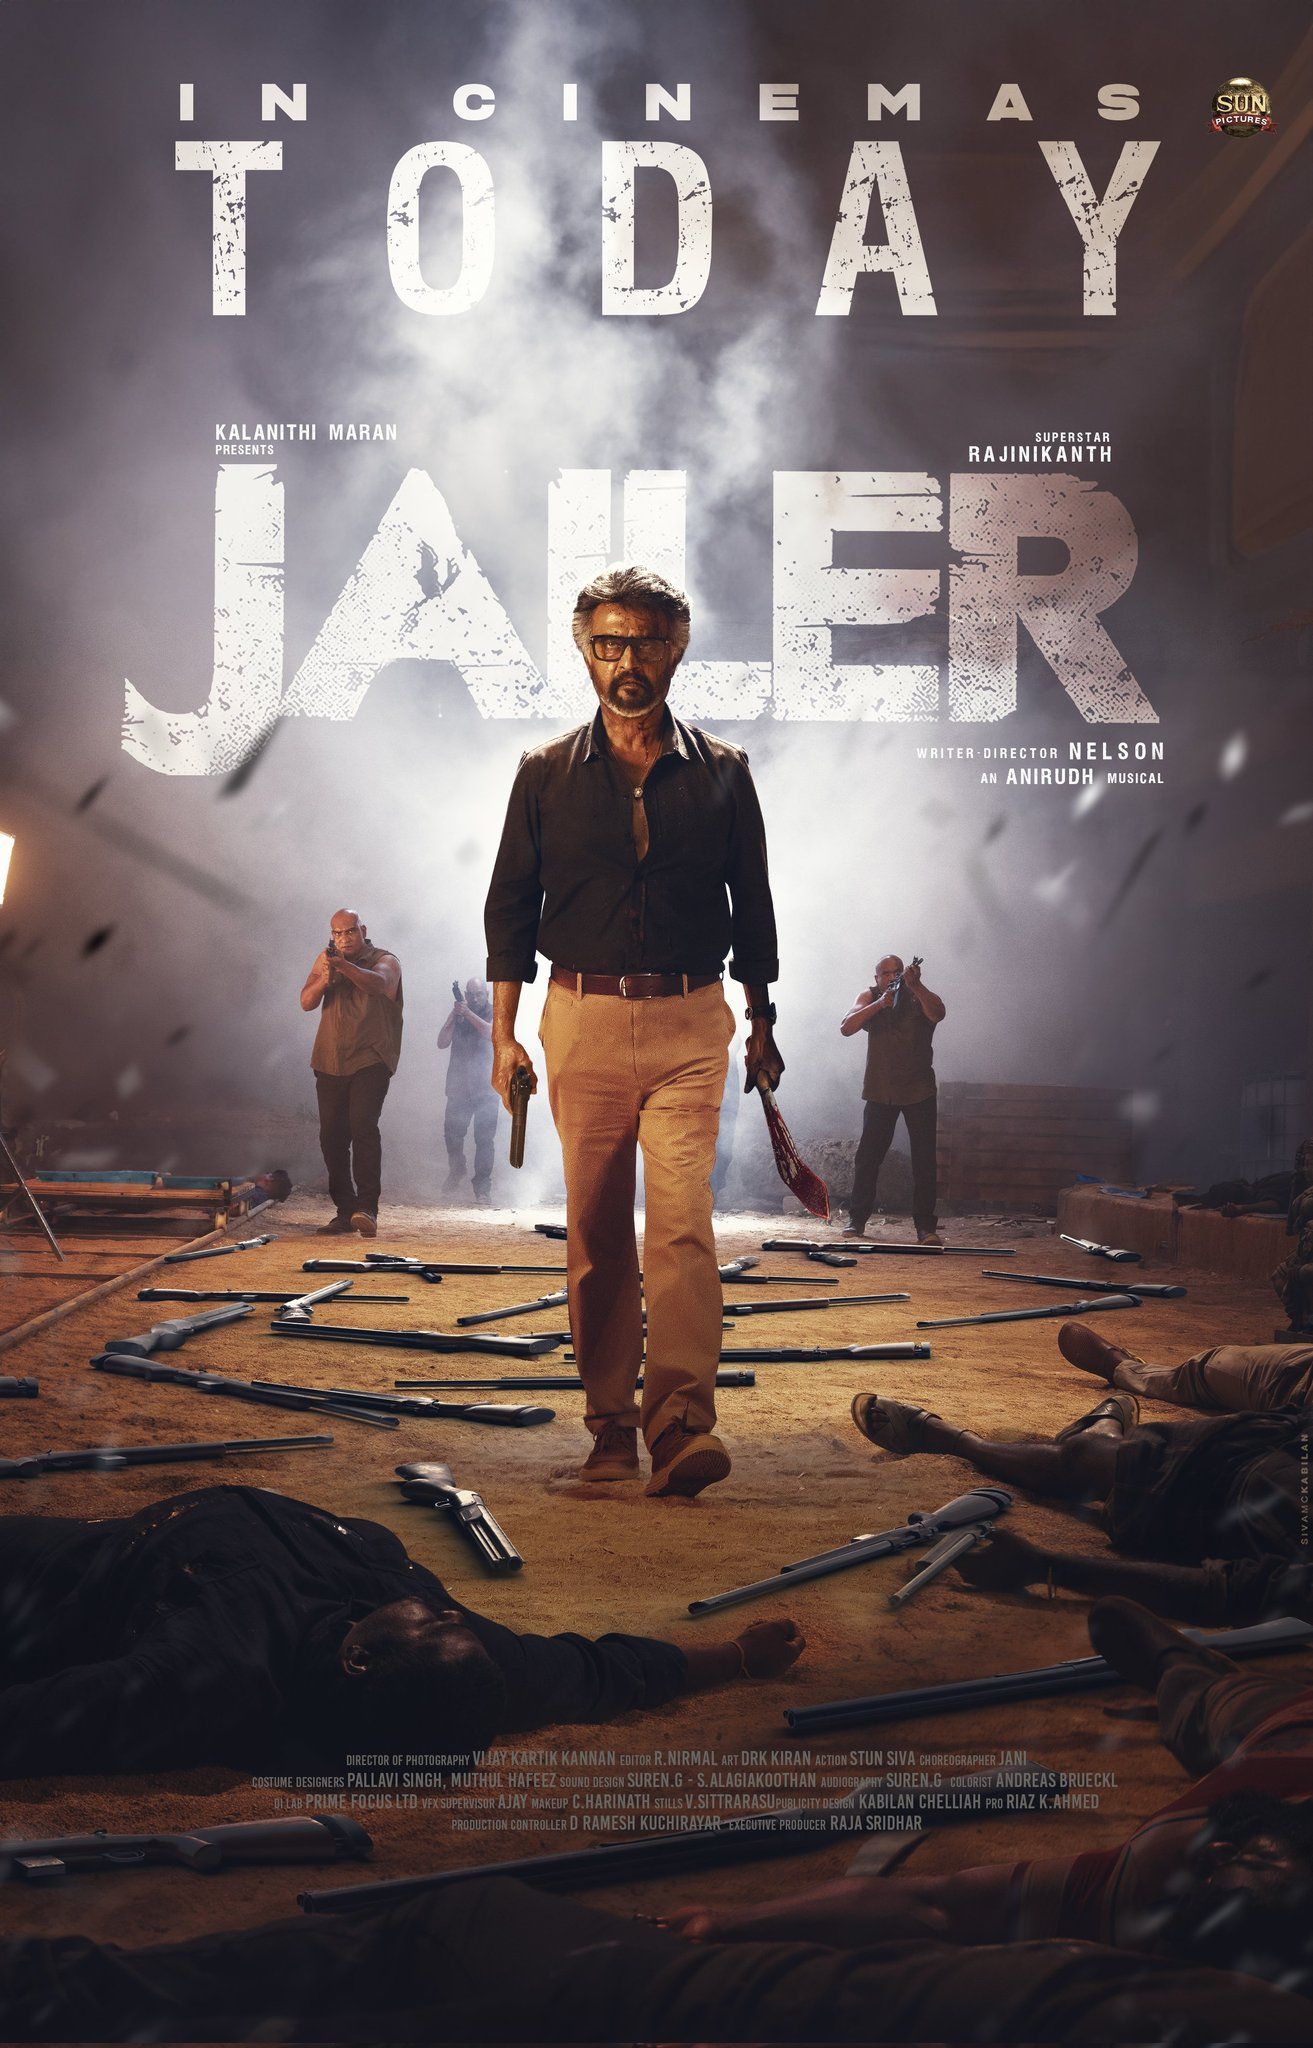 Jailer (2023) Hindi Dubbed Movie